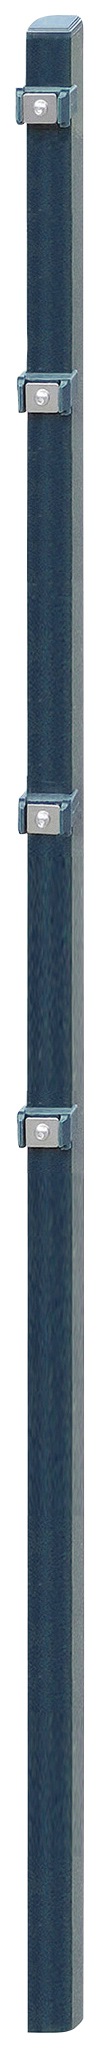 Arvotec Zaunpfosten »ESSENTIAL 140«, 4x4x200 cm für Mattenhöhe 140 cm, zum Einbetonieren